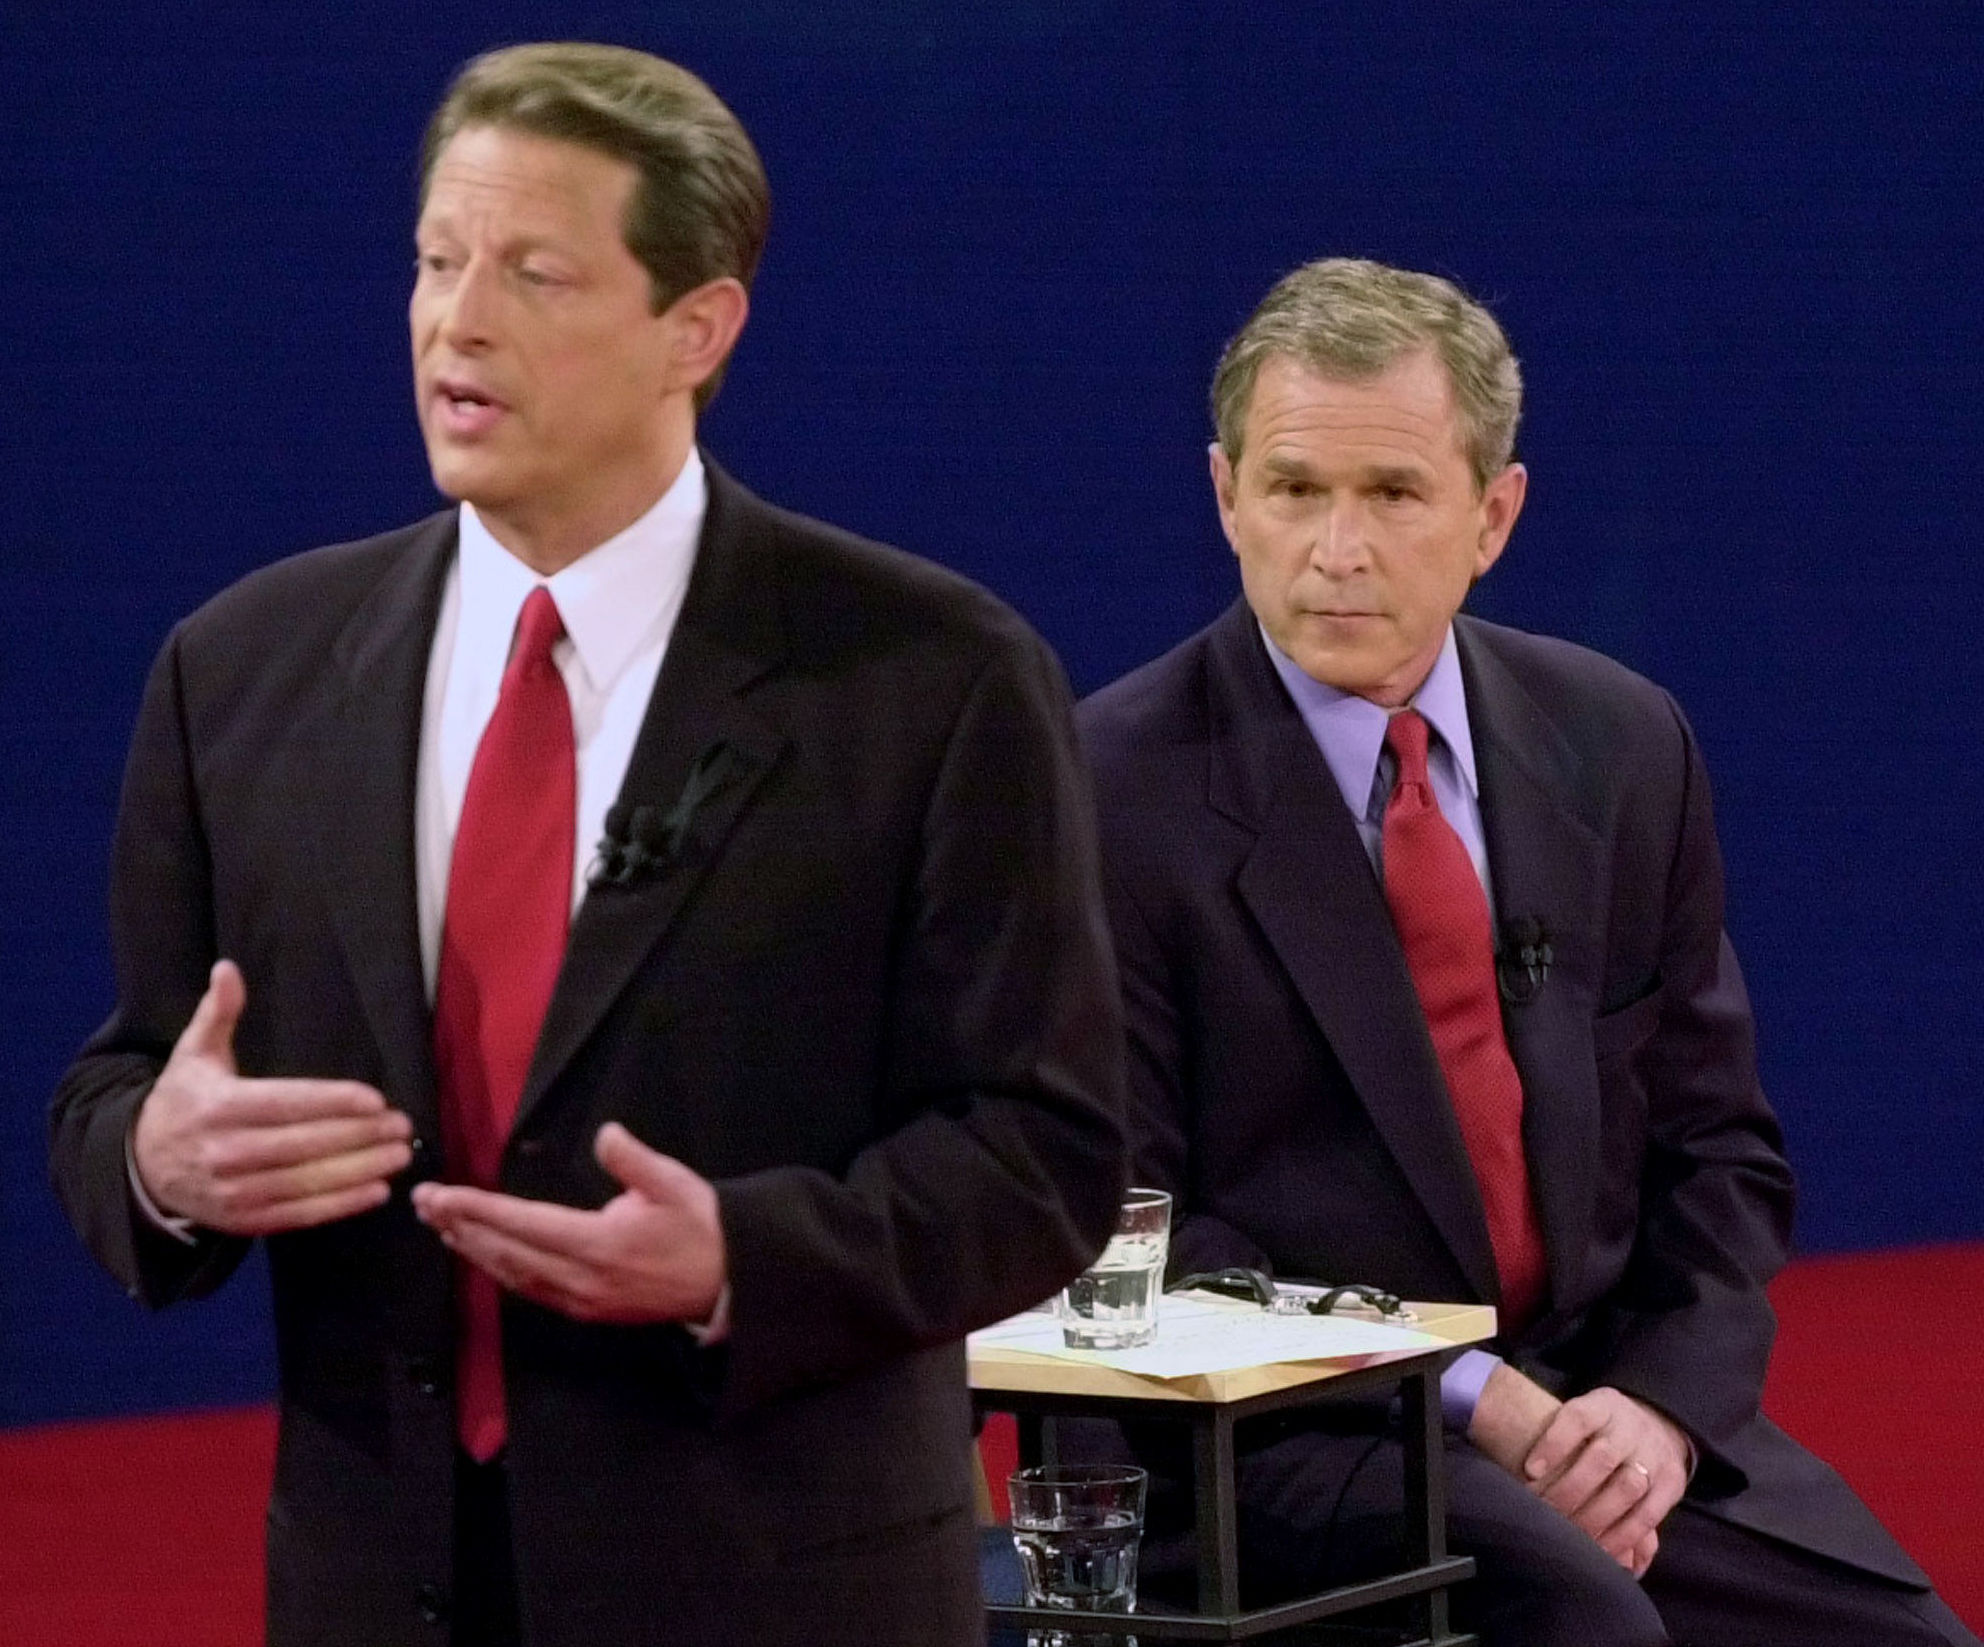 Кандидат в президенты США Вице-президент Эл Гор (слева) и кандидат Губернатор Техаса Джордж Буш наблюдает на дебатах в Вашингтонском университете в Сент-Луисе, 17 октября 2000 года